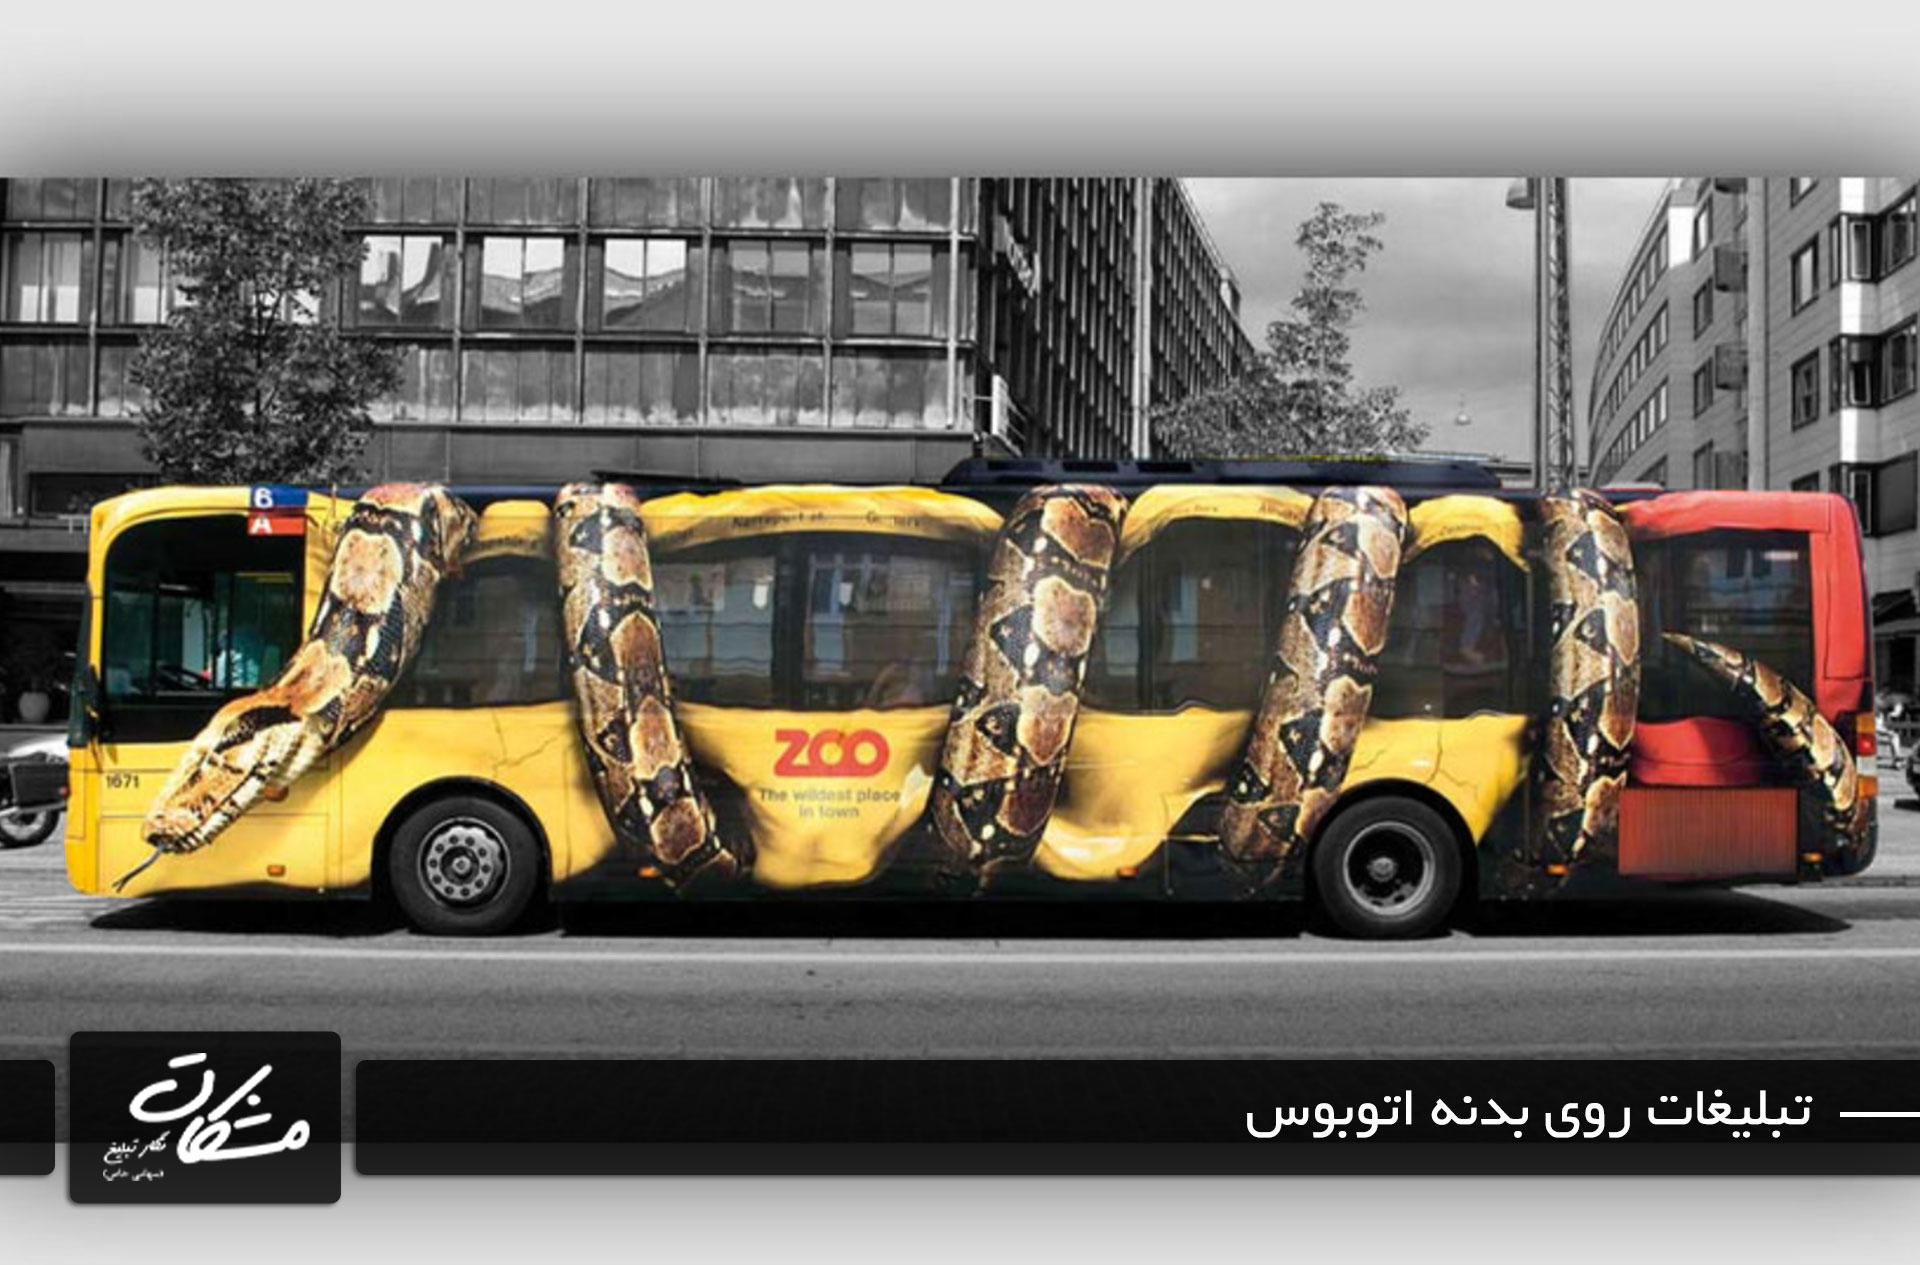 bus advertising تبلیغات روی بدنه اتوبوس